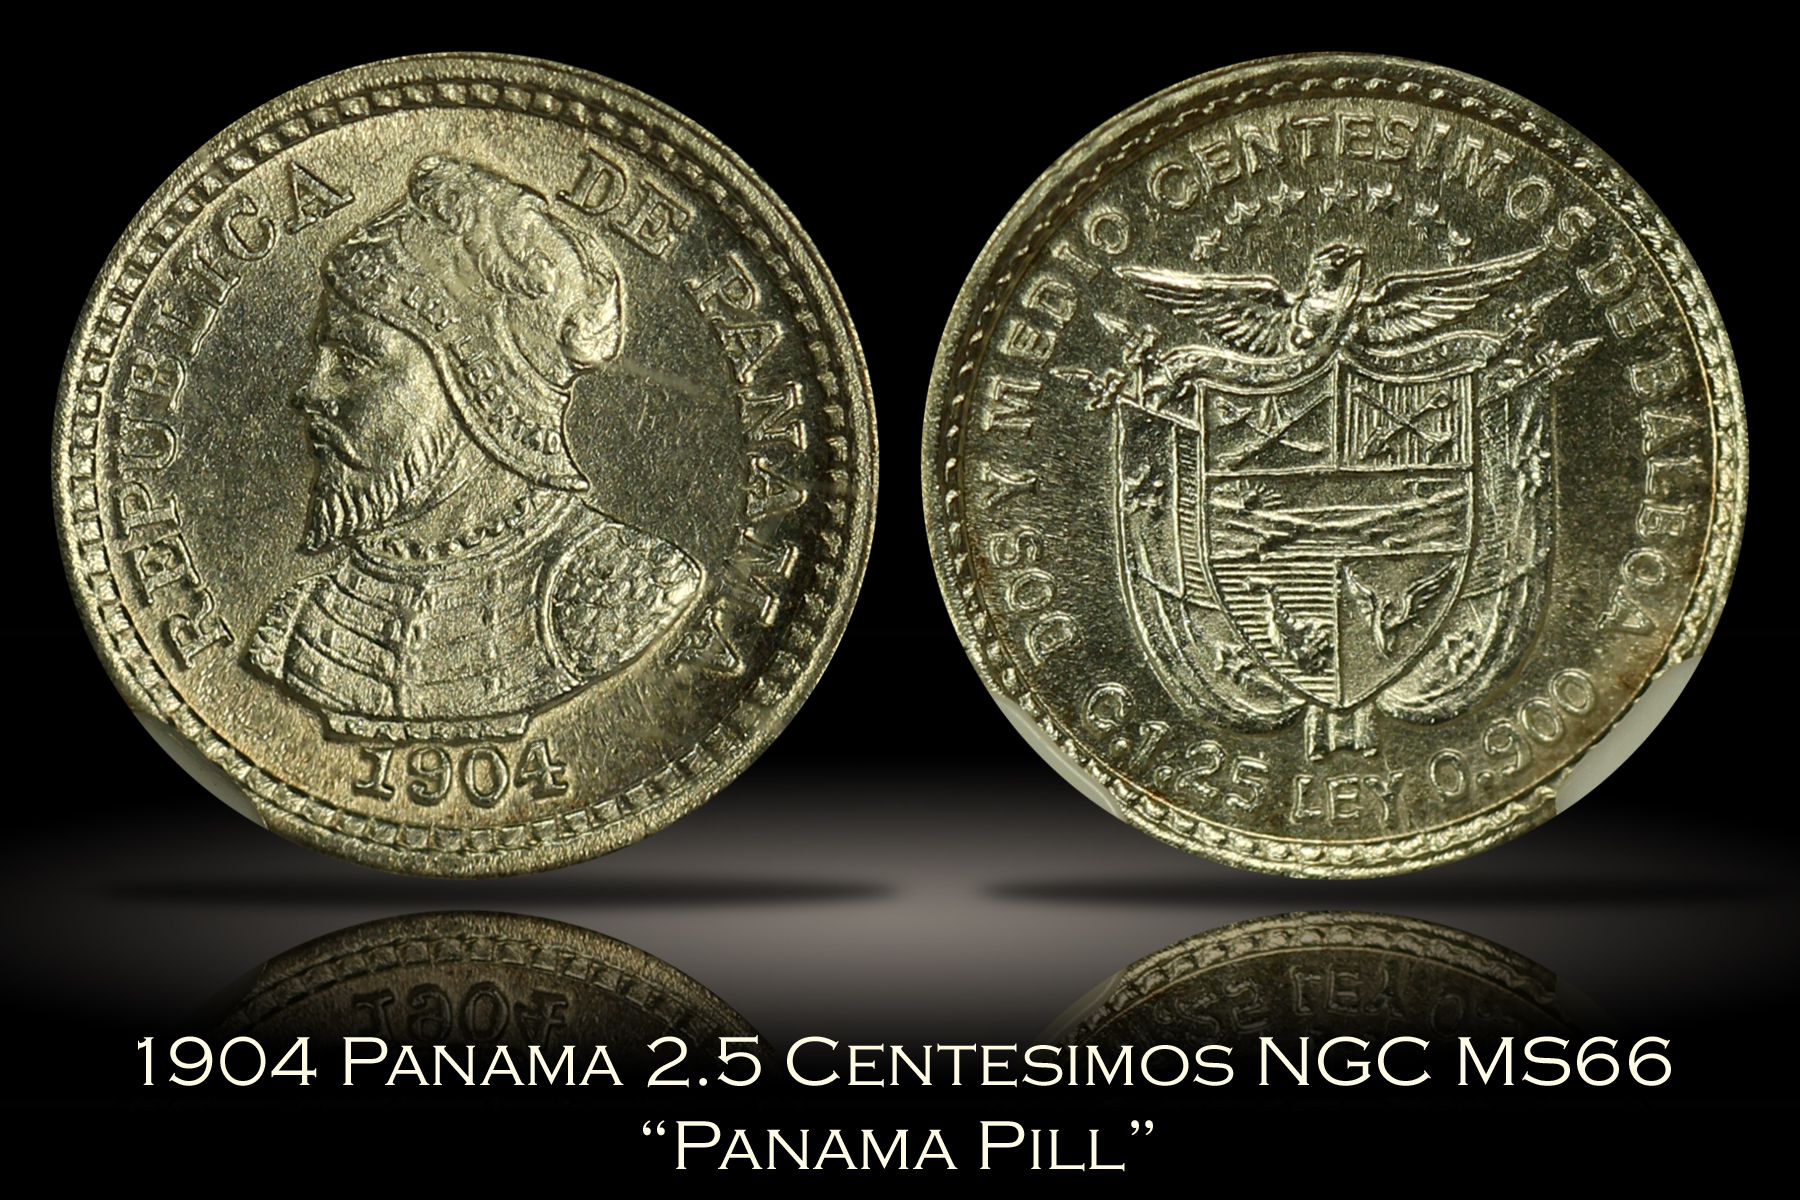 1904 Panama 2.5 Centesimos Panama Pill NGC MS66